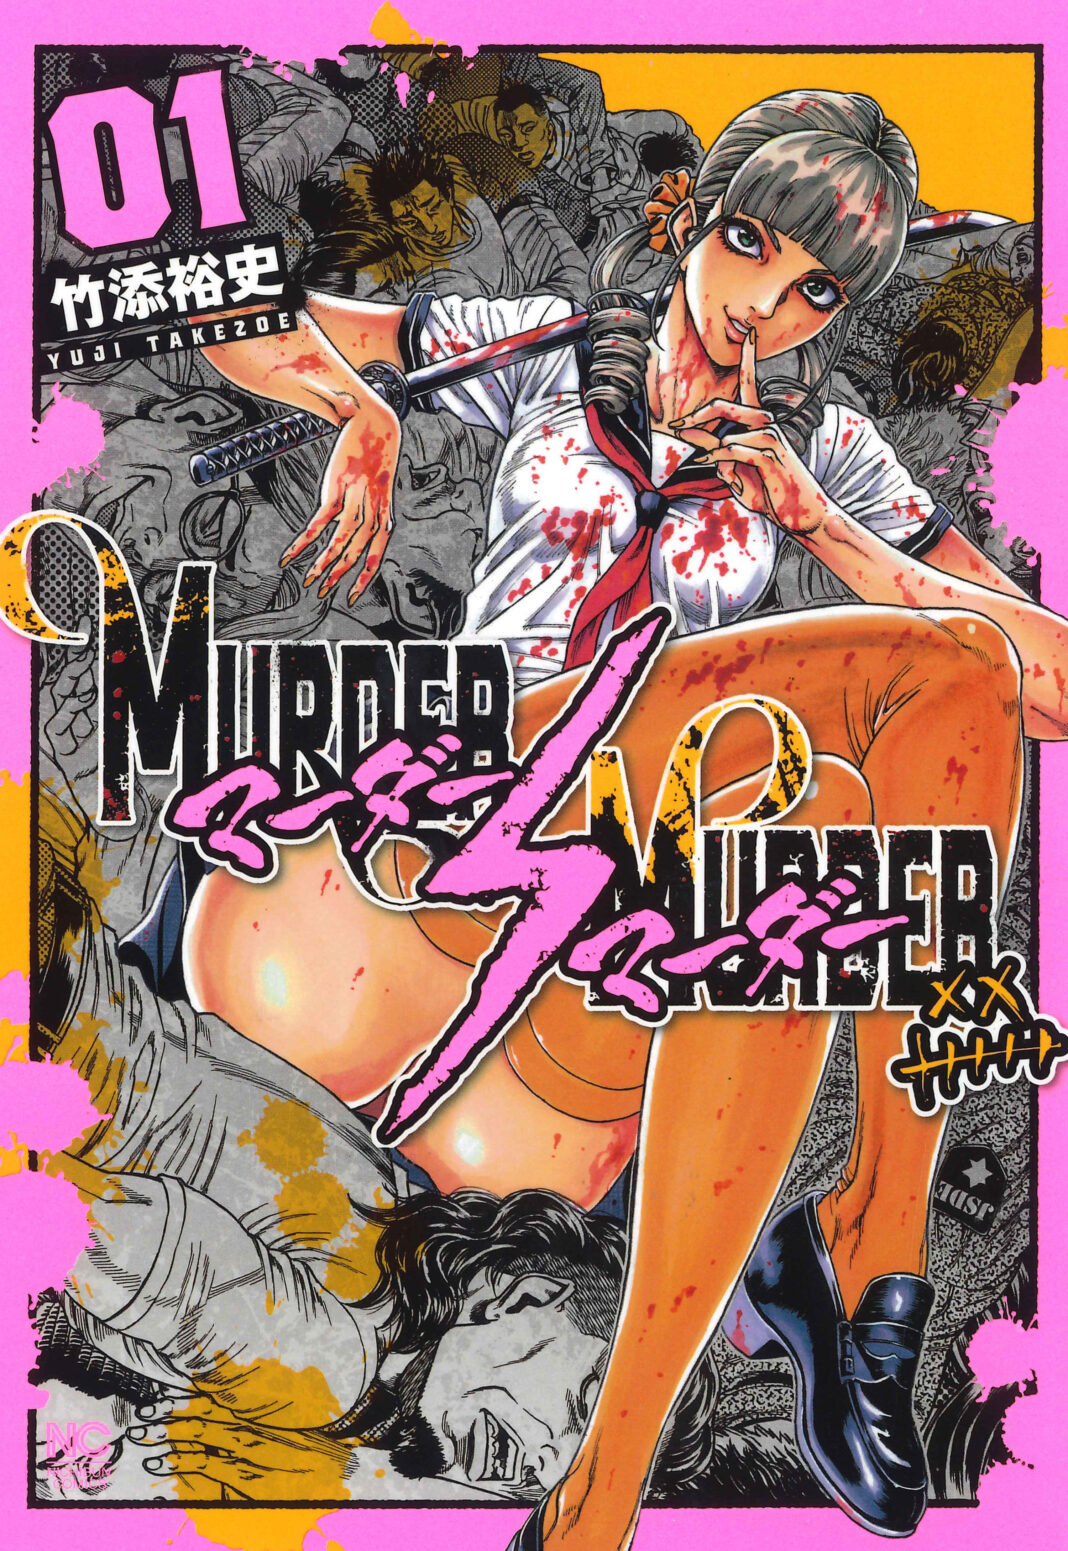 殺人鬼VS殺人鬼の死刑執行！コミックス『MURDER MURDER』（竹添裕史 著）10月29日発売のメイン画像